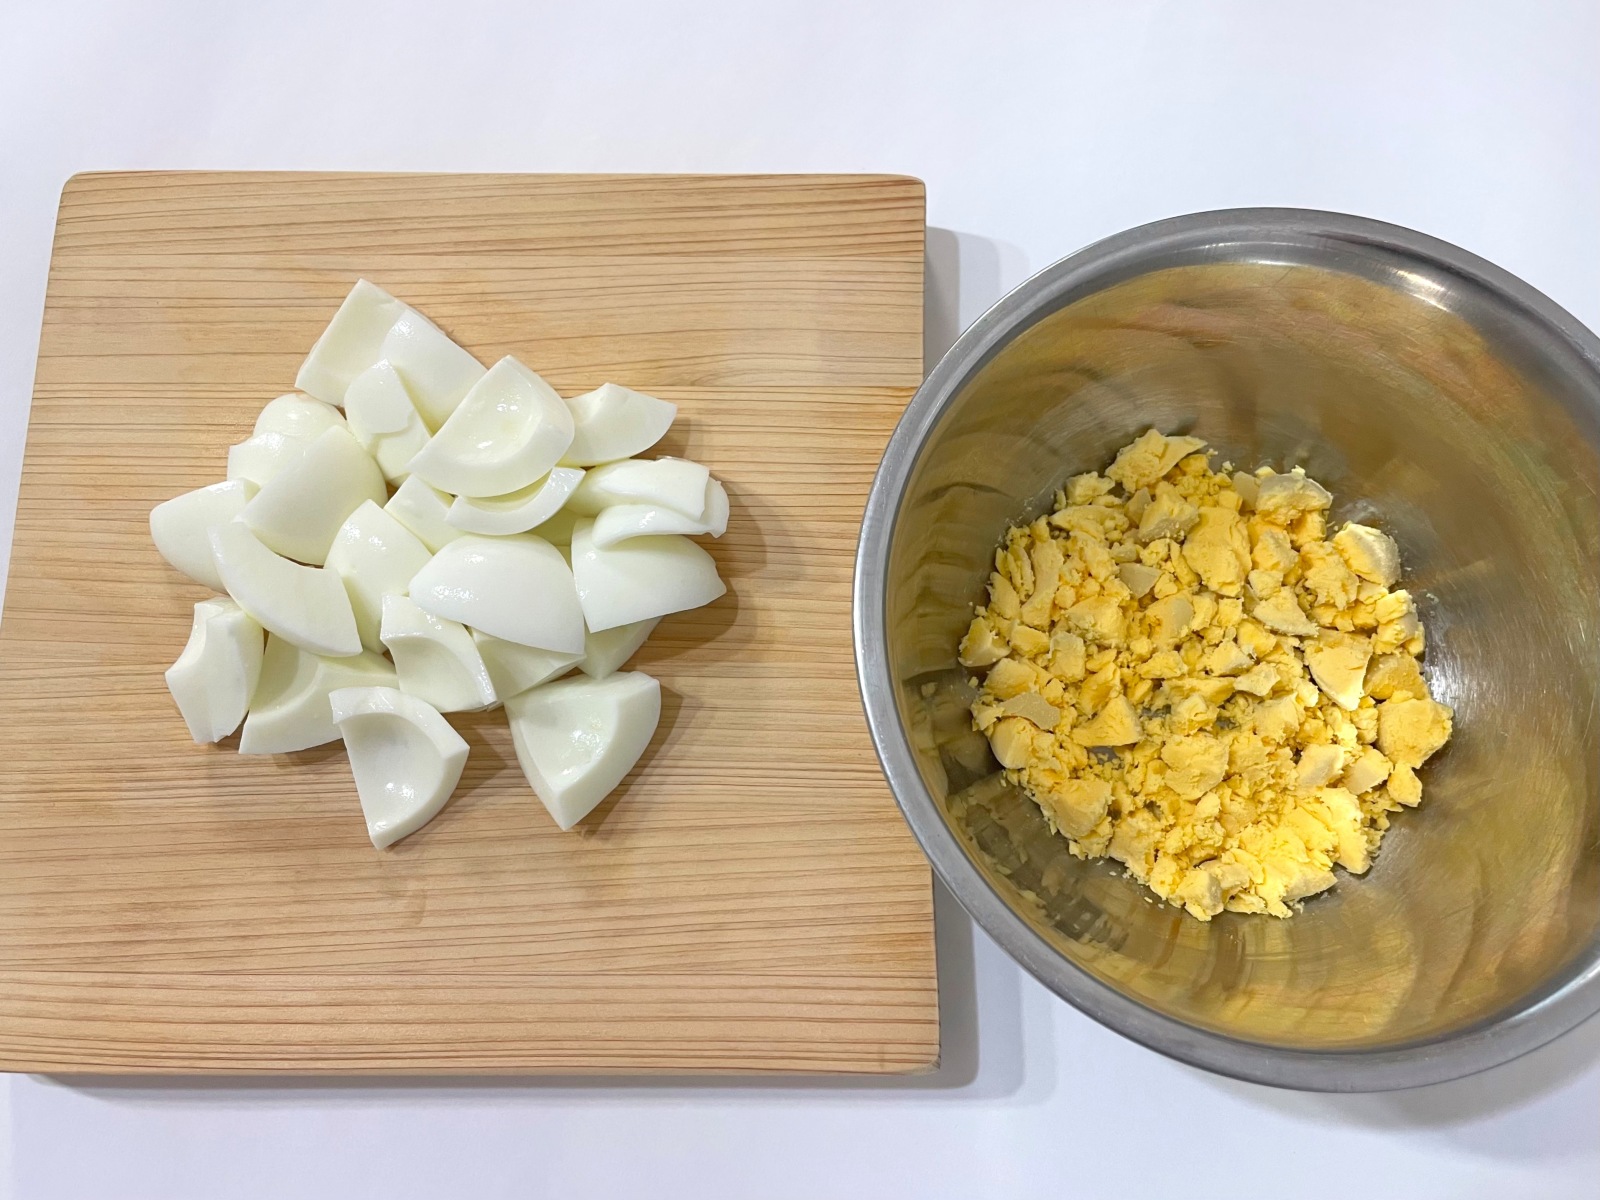 「クリーミーな卵マカロニサラダ」作り方2